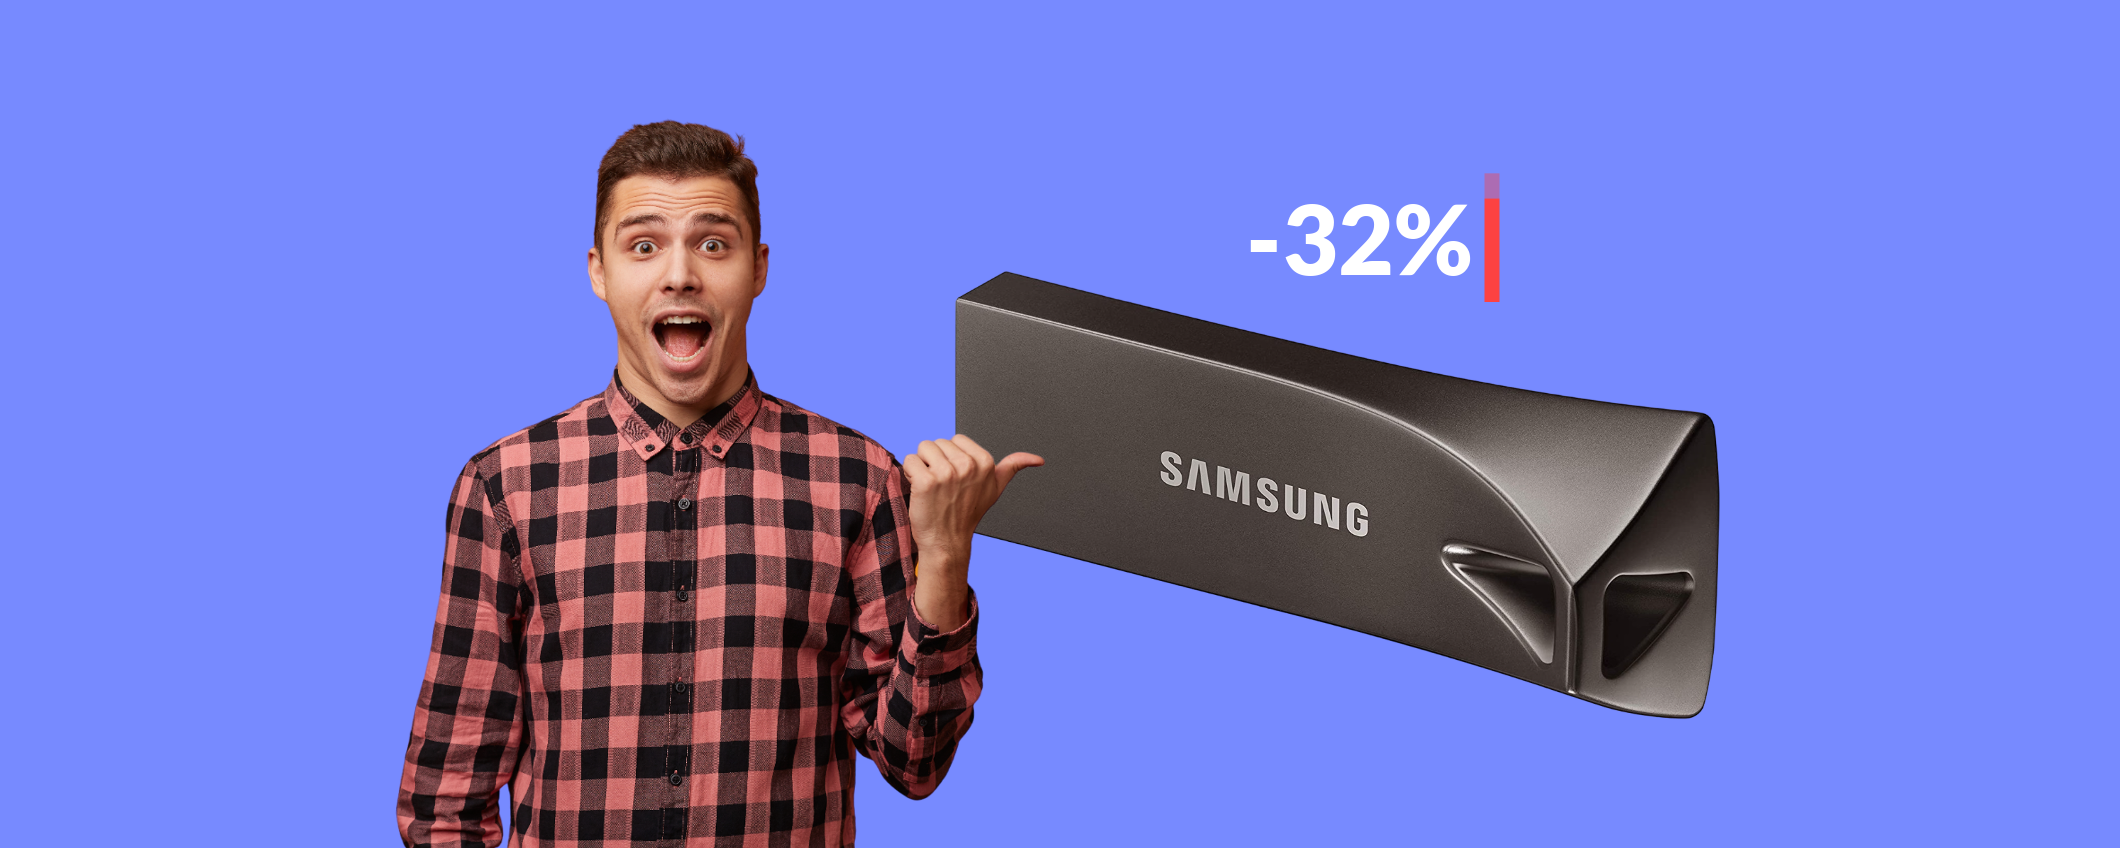 Chiavetta USB 32GB Samsung in offerta: veloce e resistente (12€)